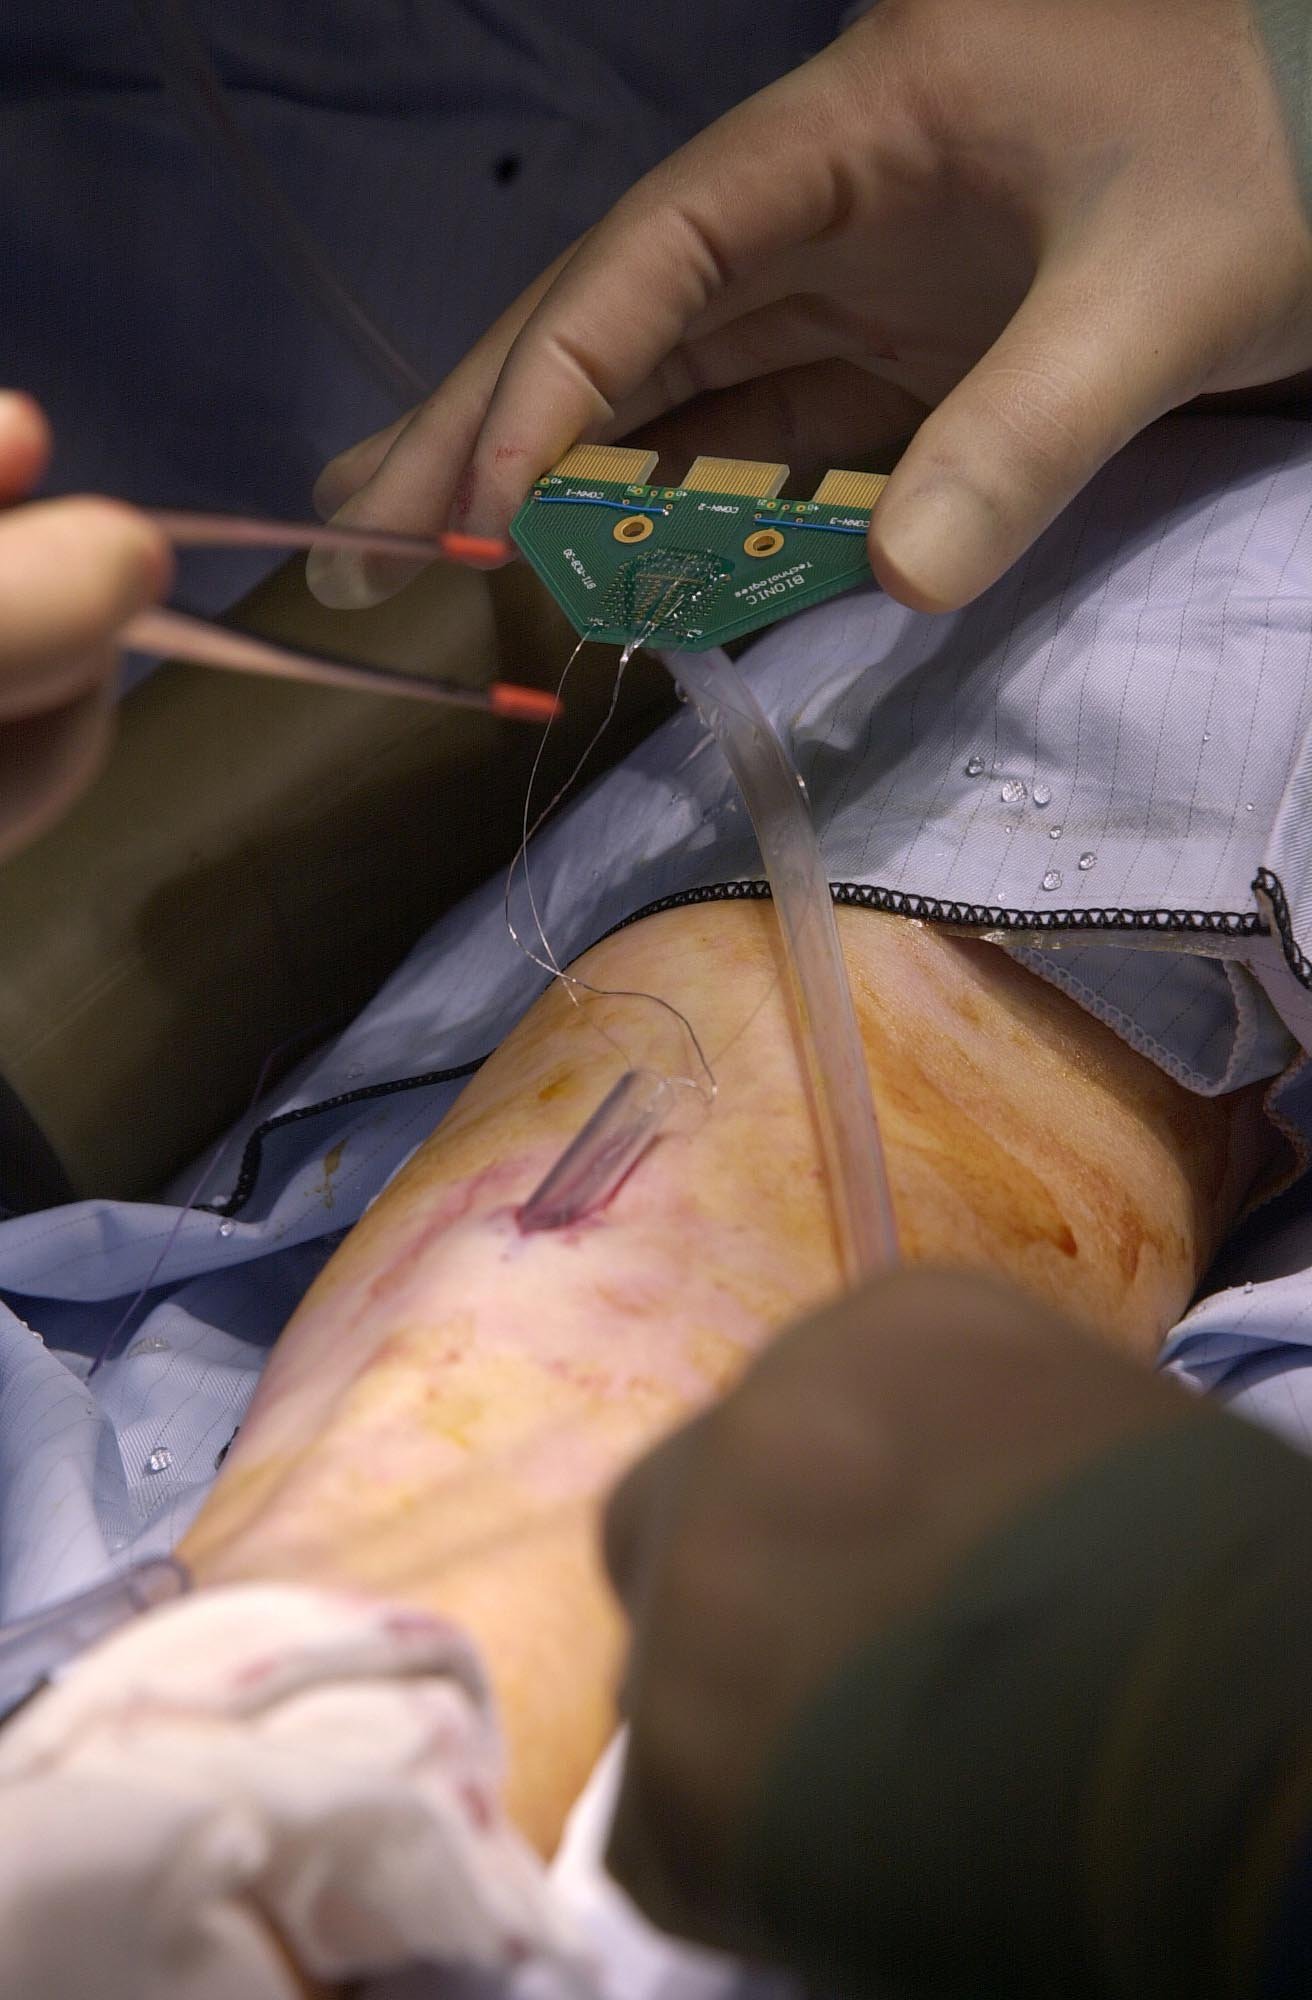 Chirurgen operierten Professor Kevin Warwick, um ihm im März 2002 einen Mikrochip in den Arm zu implantieren